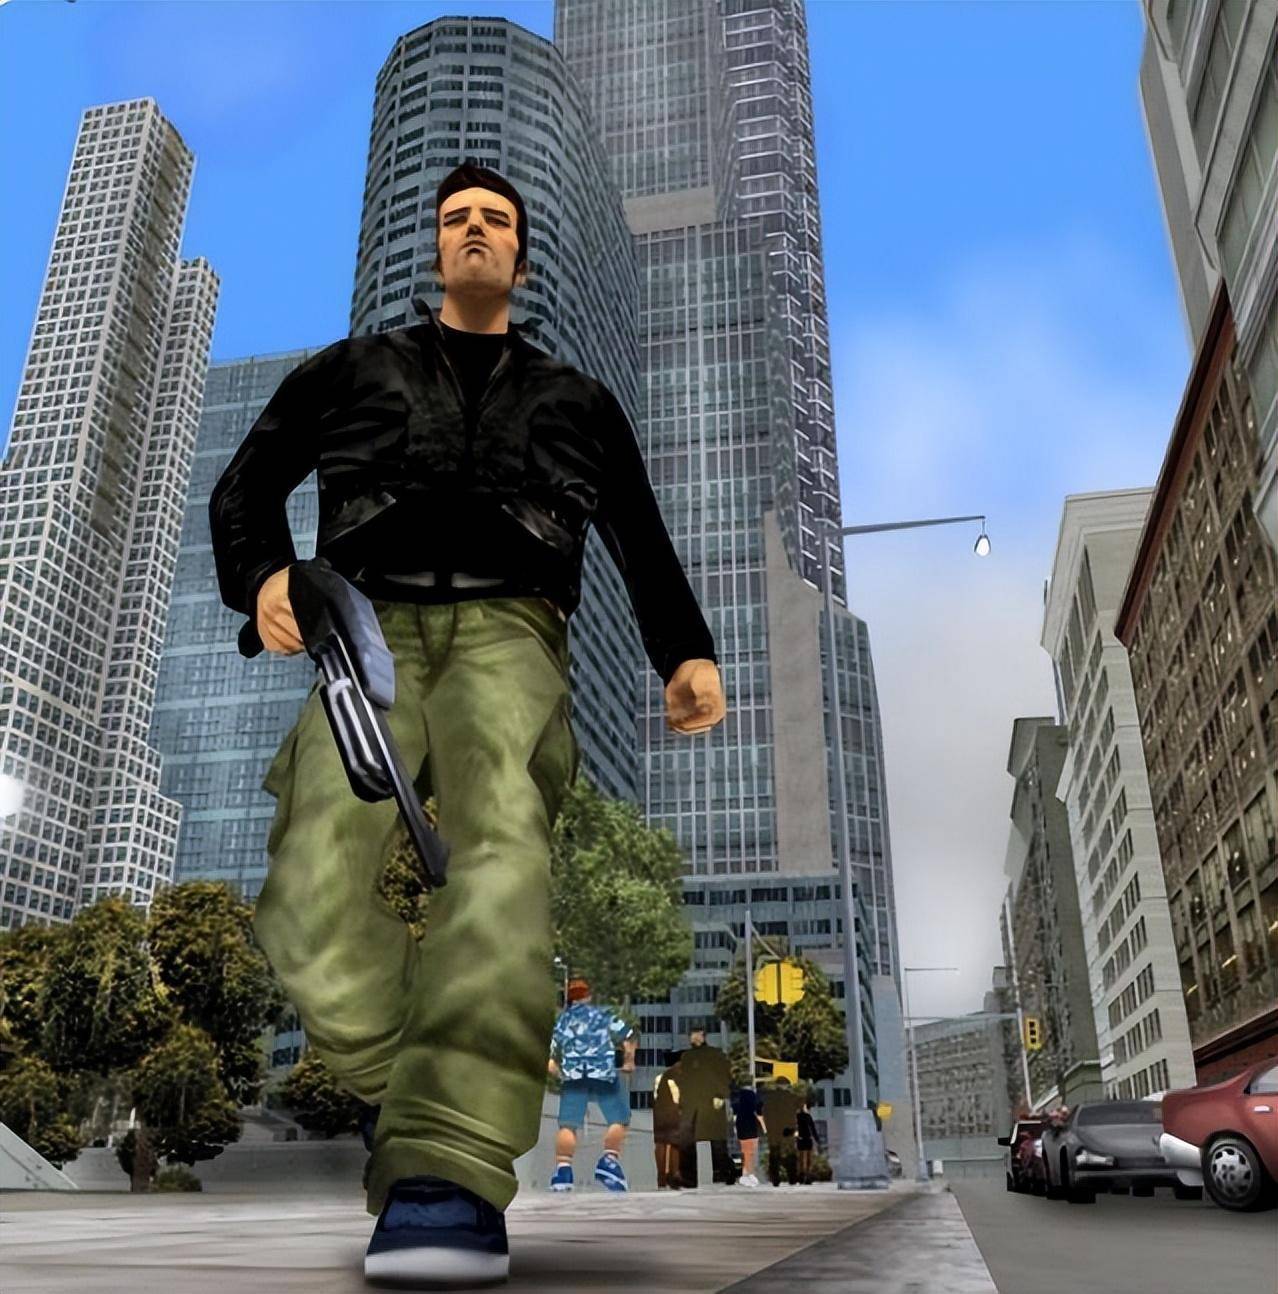 GTA3——GTA系列3D世界观开山之作